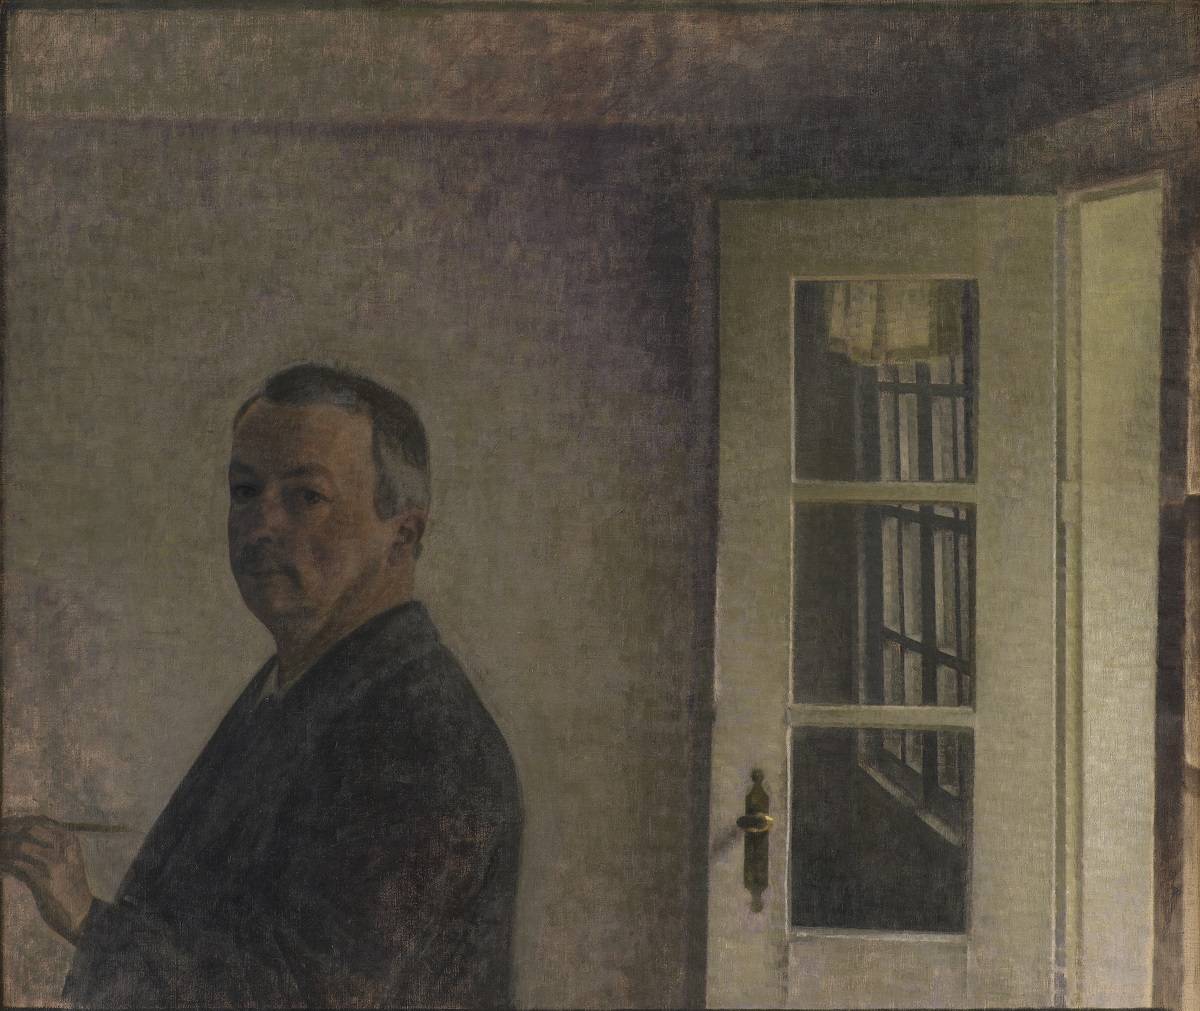 Vilhelm Hammershøi, Autoportret w Spurveskjul, 1911, Statens Museum for Kunst, National Gallery of Denmark